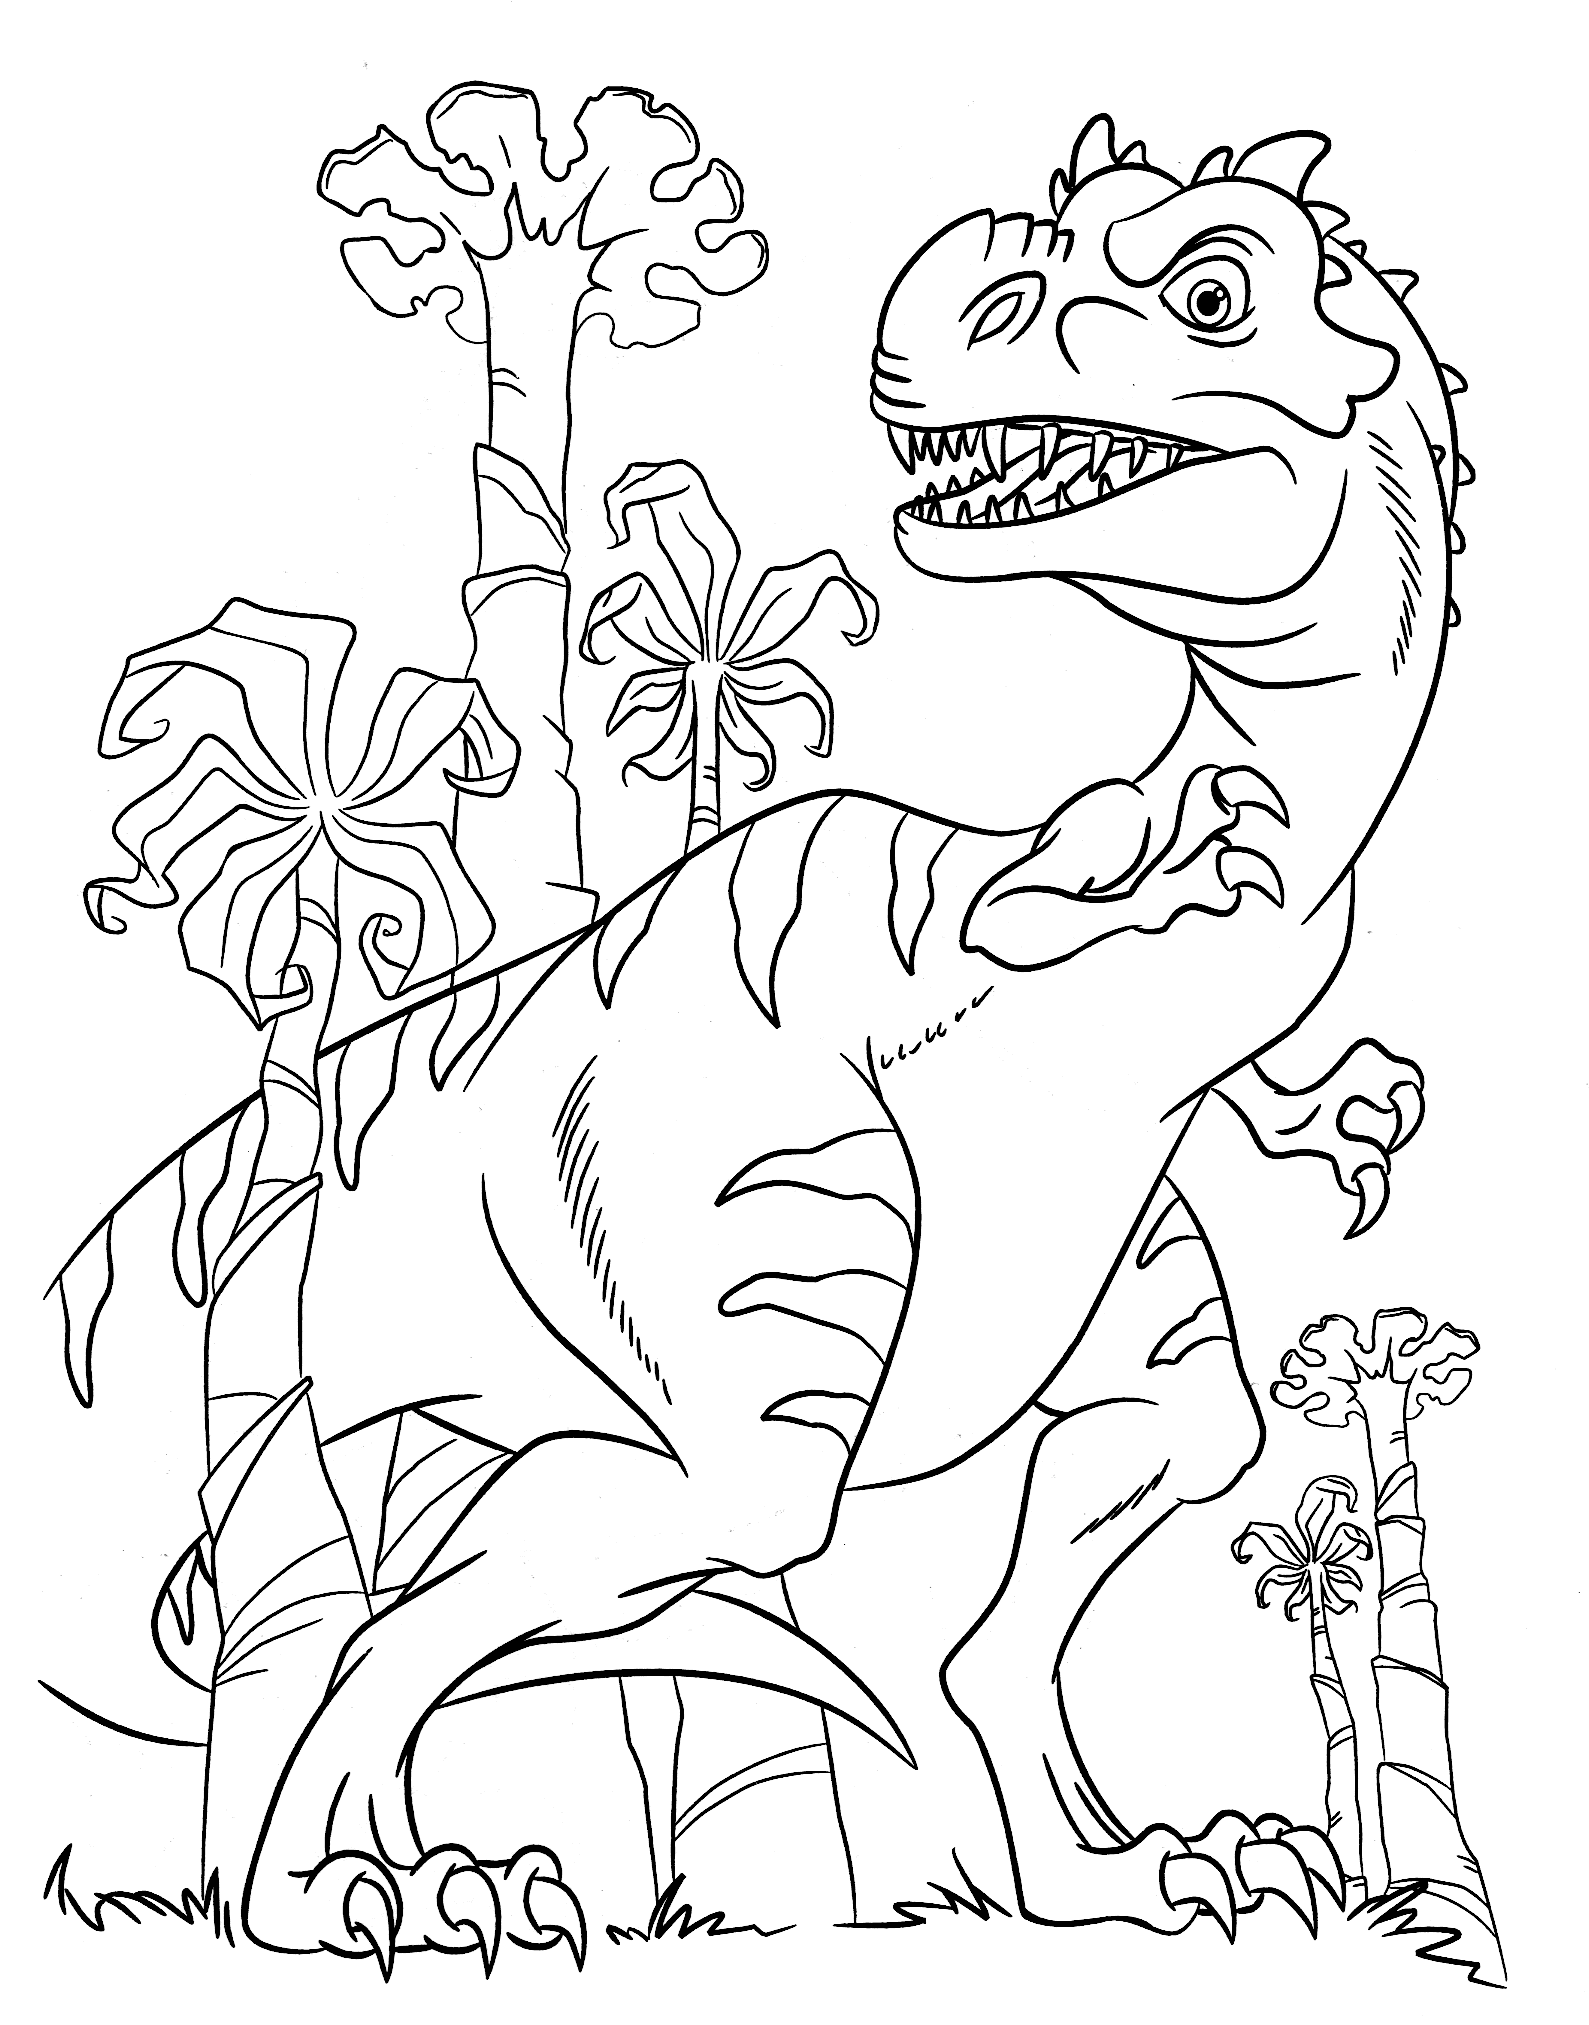 Огромный динозавр гуляет среди пальм